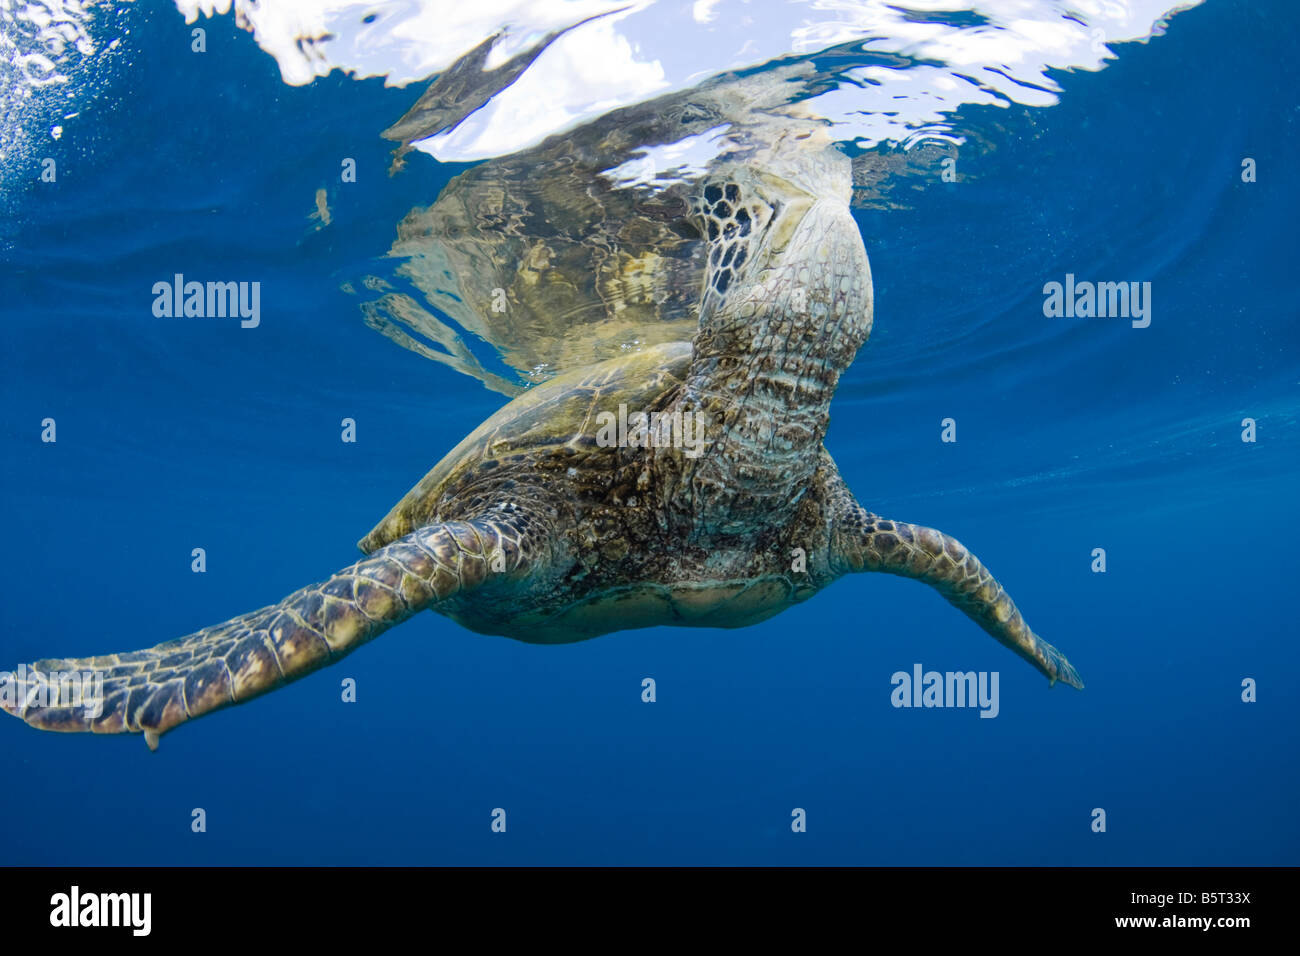 Eine grüne Meeresschildkröte, Chelonia Mydas, eine bedrohte Art, hebt es s Kopf um einen Atemzug, Hawaii zu nehmen. Stockfoto